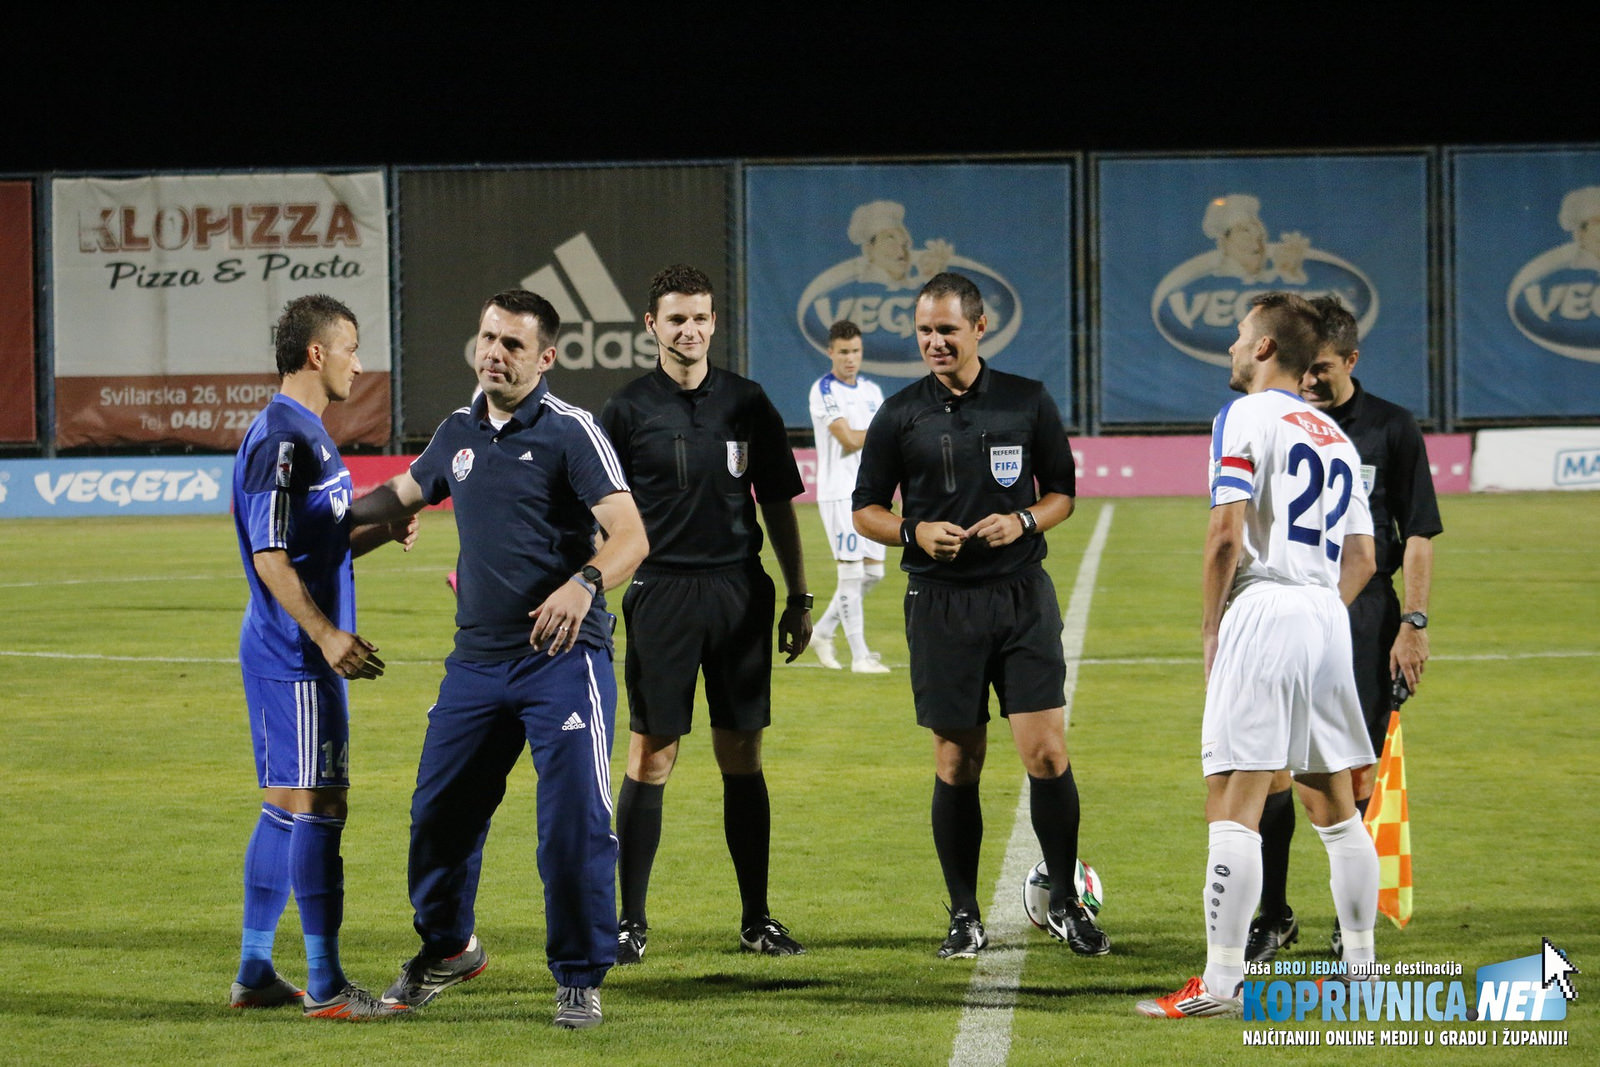 Slavenov trener Željko Kopić bio je zadovoljan nakon prve prvenstvene pobjede // Foto: Mario Kos